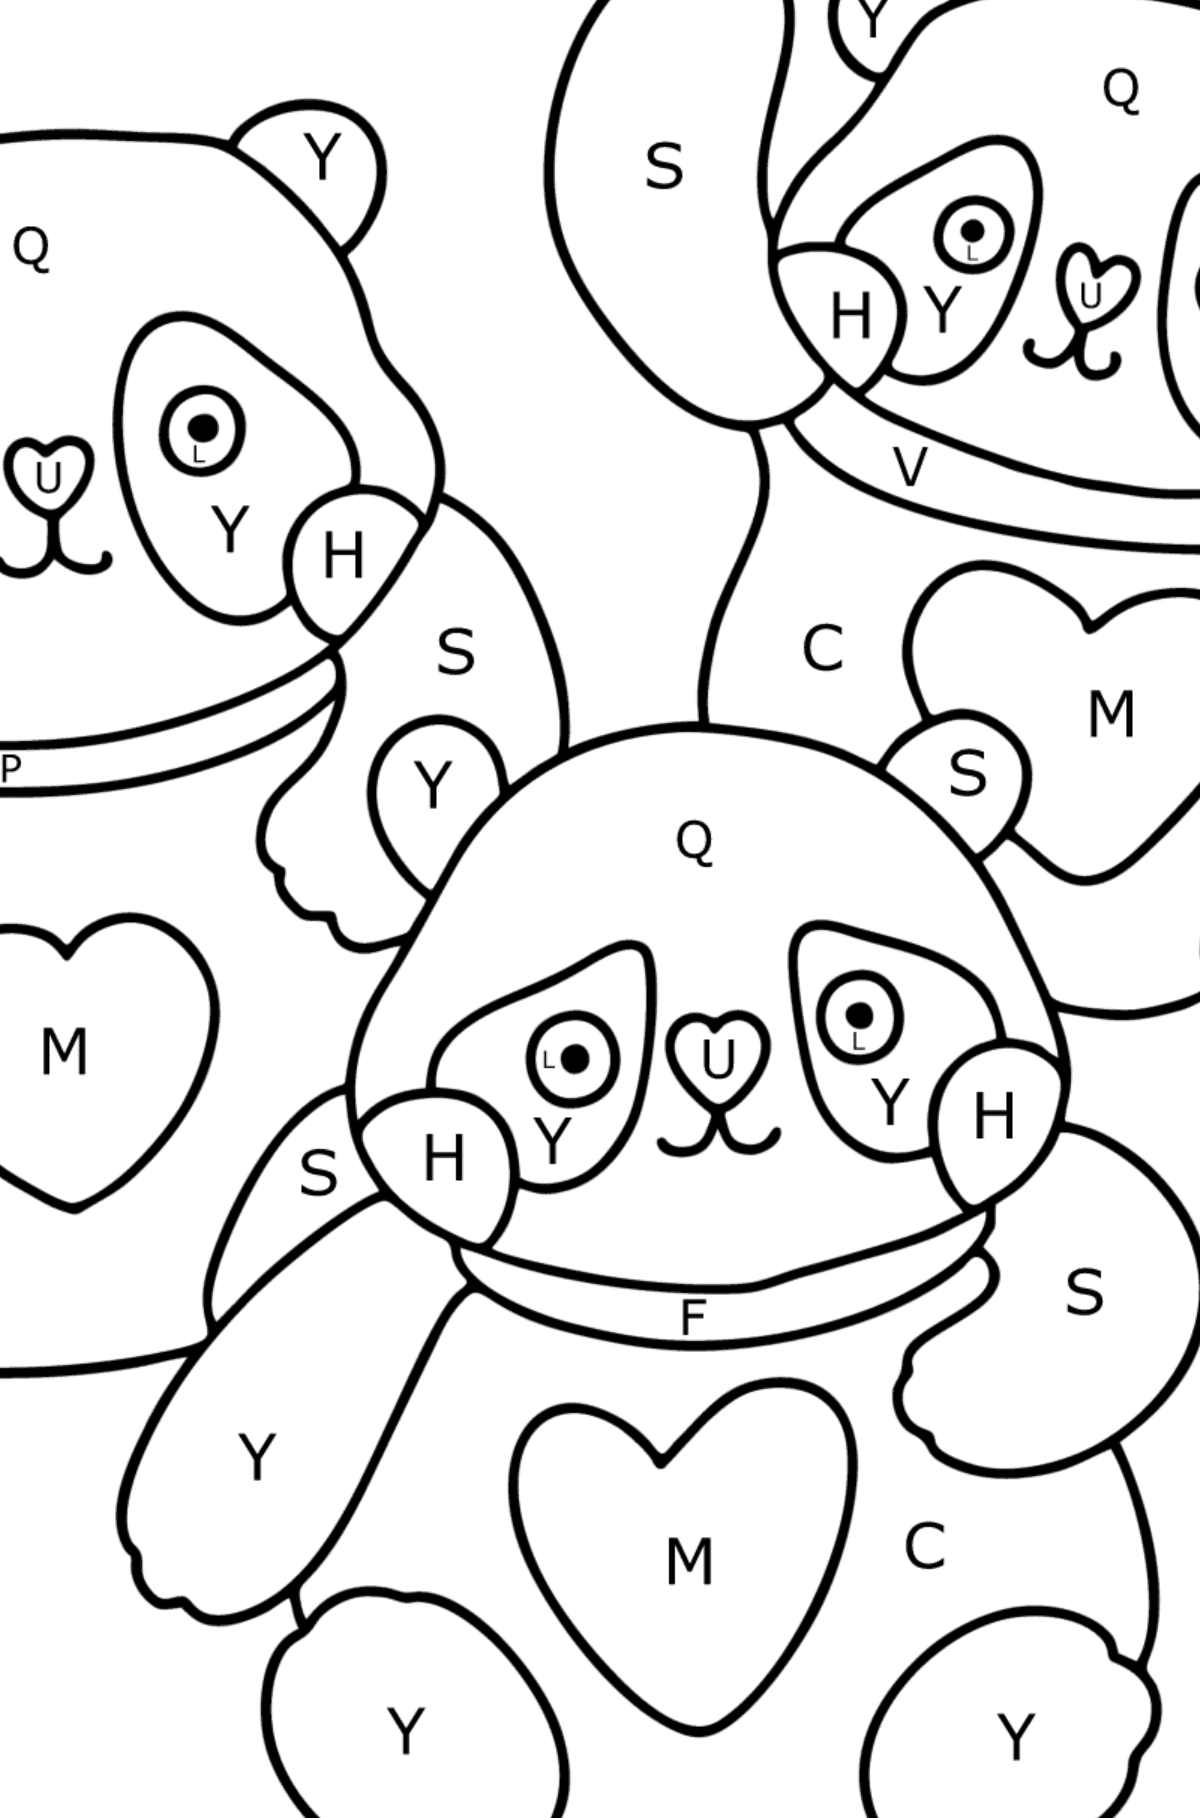 Disegno di panda kawaii da colorare - Colorare per lettere per bambini